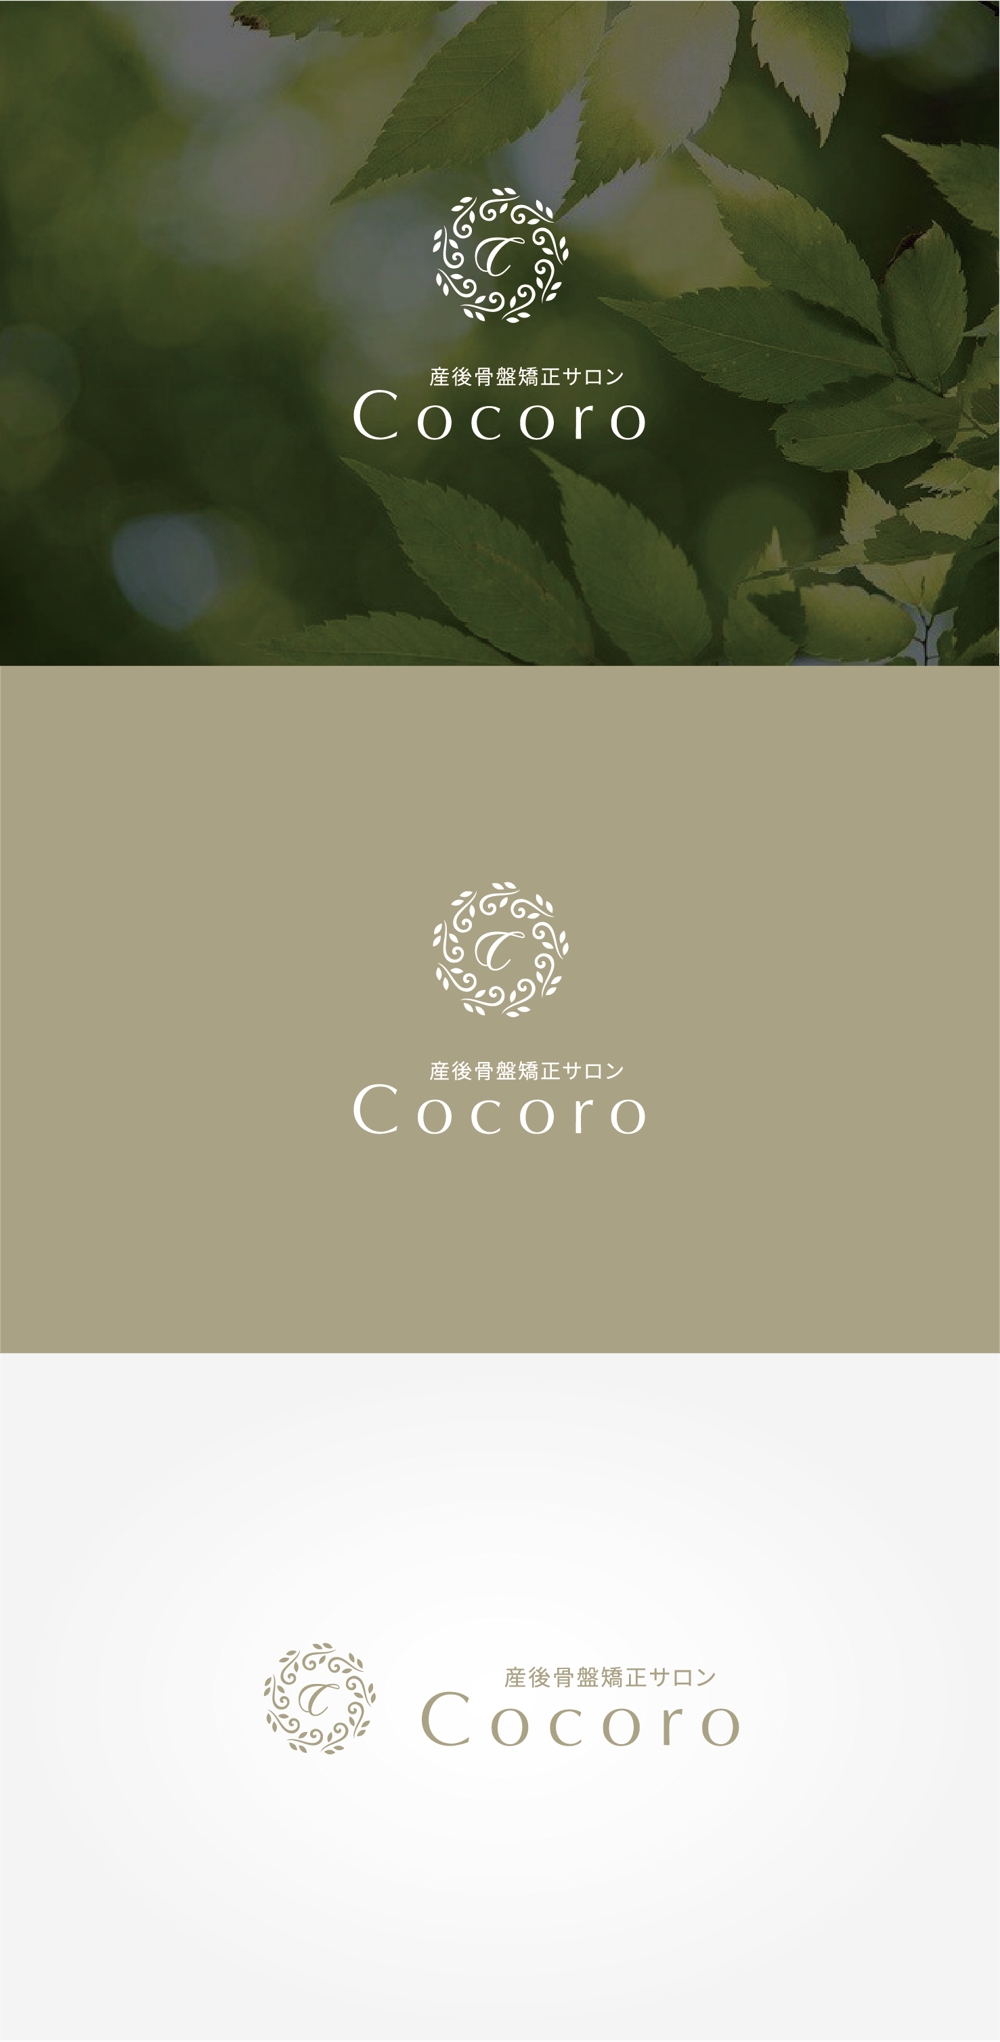 既存ロゴ「健美整体Cocoro」のロゴの手書き風に変更